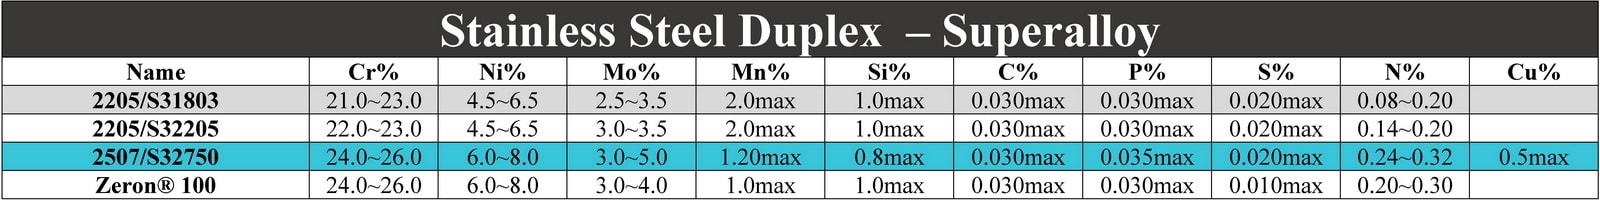 آنالیز استیل ضد زنگ داپلکس 2750-UNS32750 - Stainless Steel Duplex